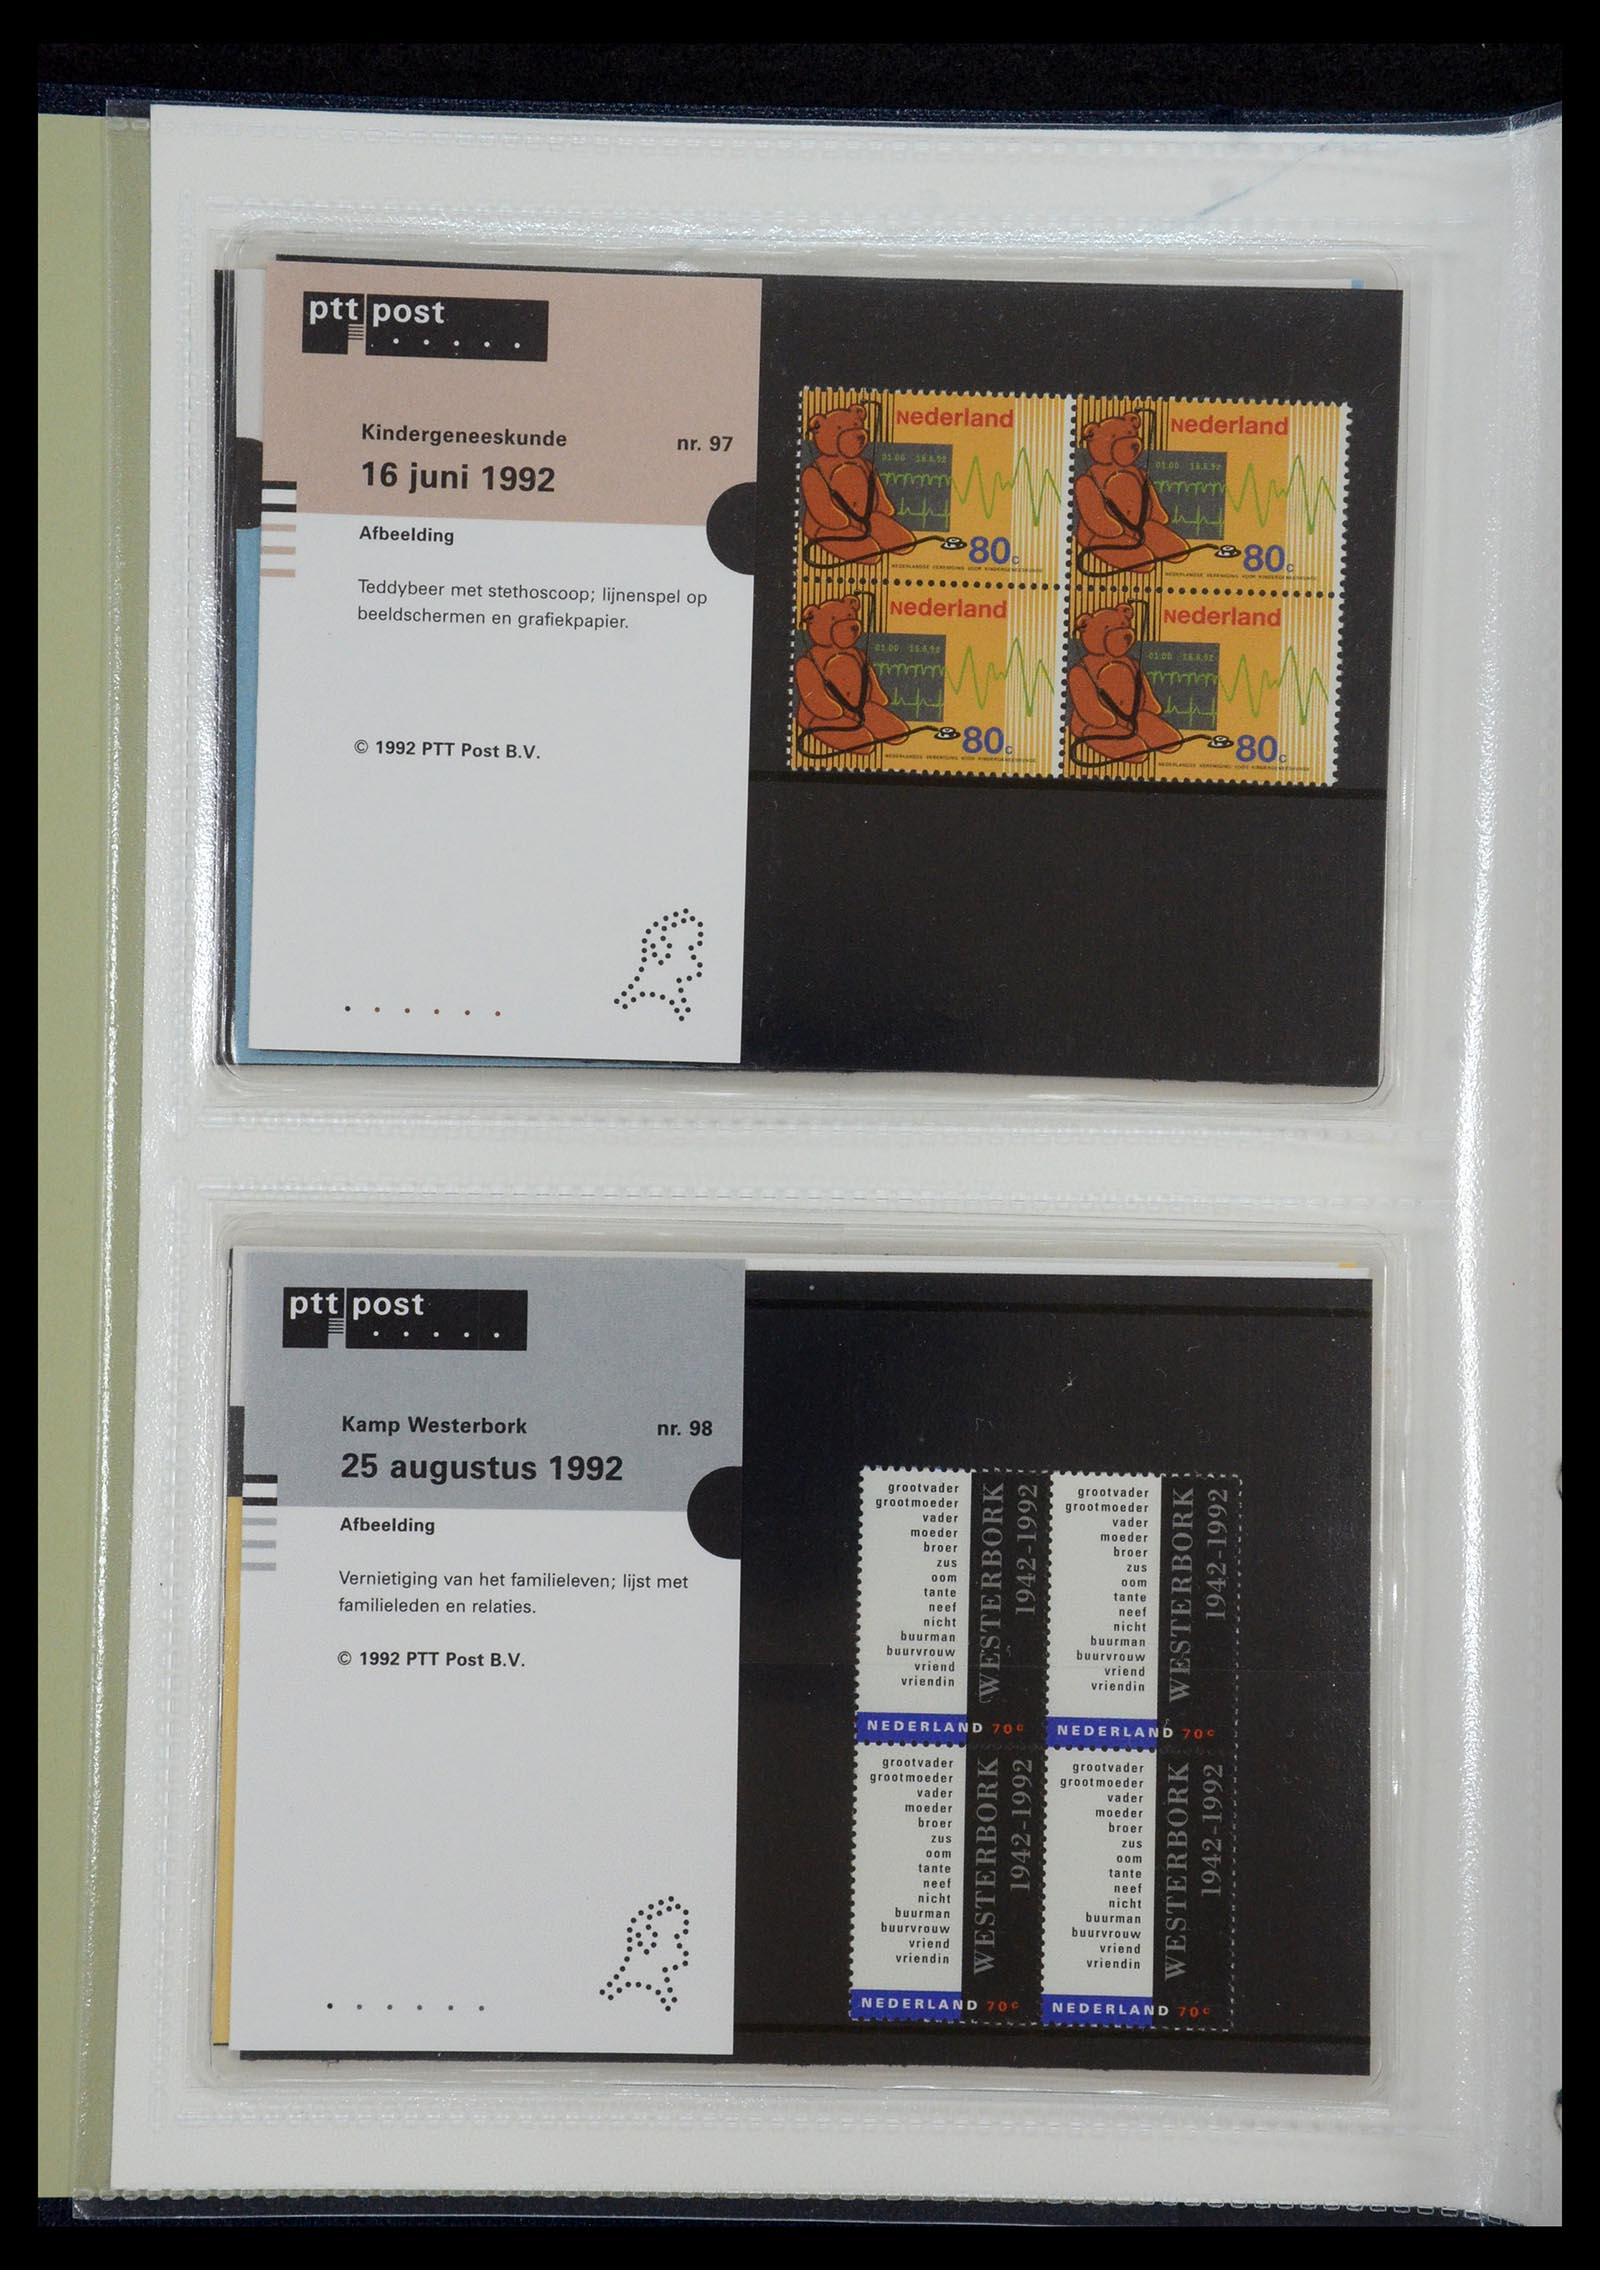 35144 050 - Stamp Collection 35144 Netherlands PTT presentation packs 1982-2021!